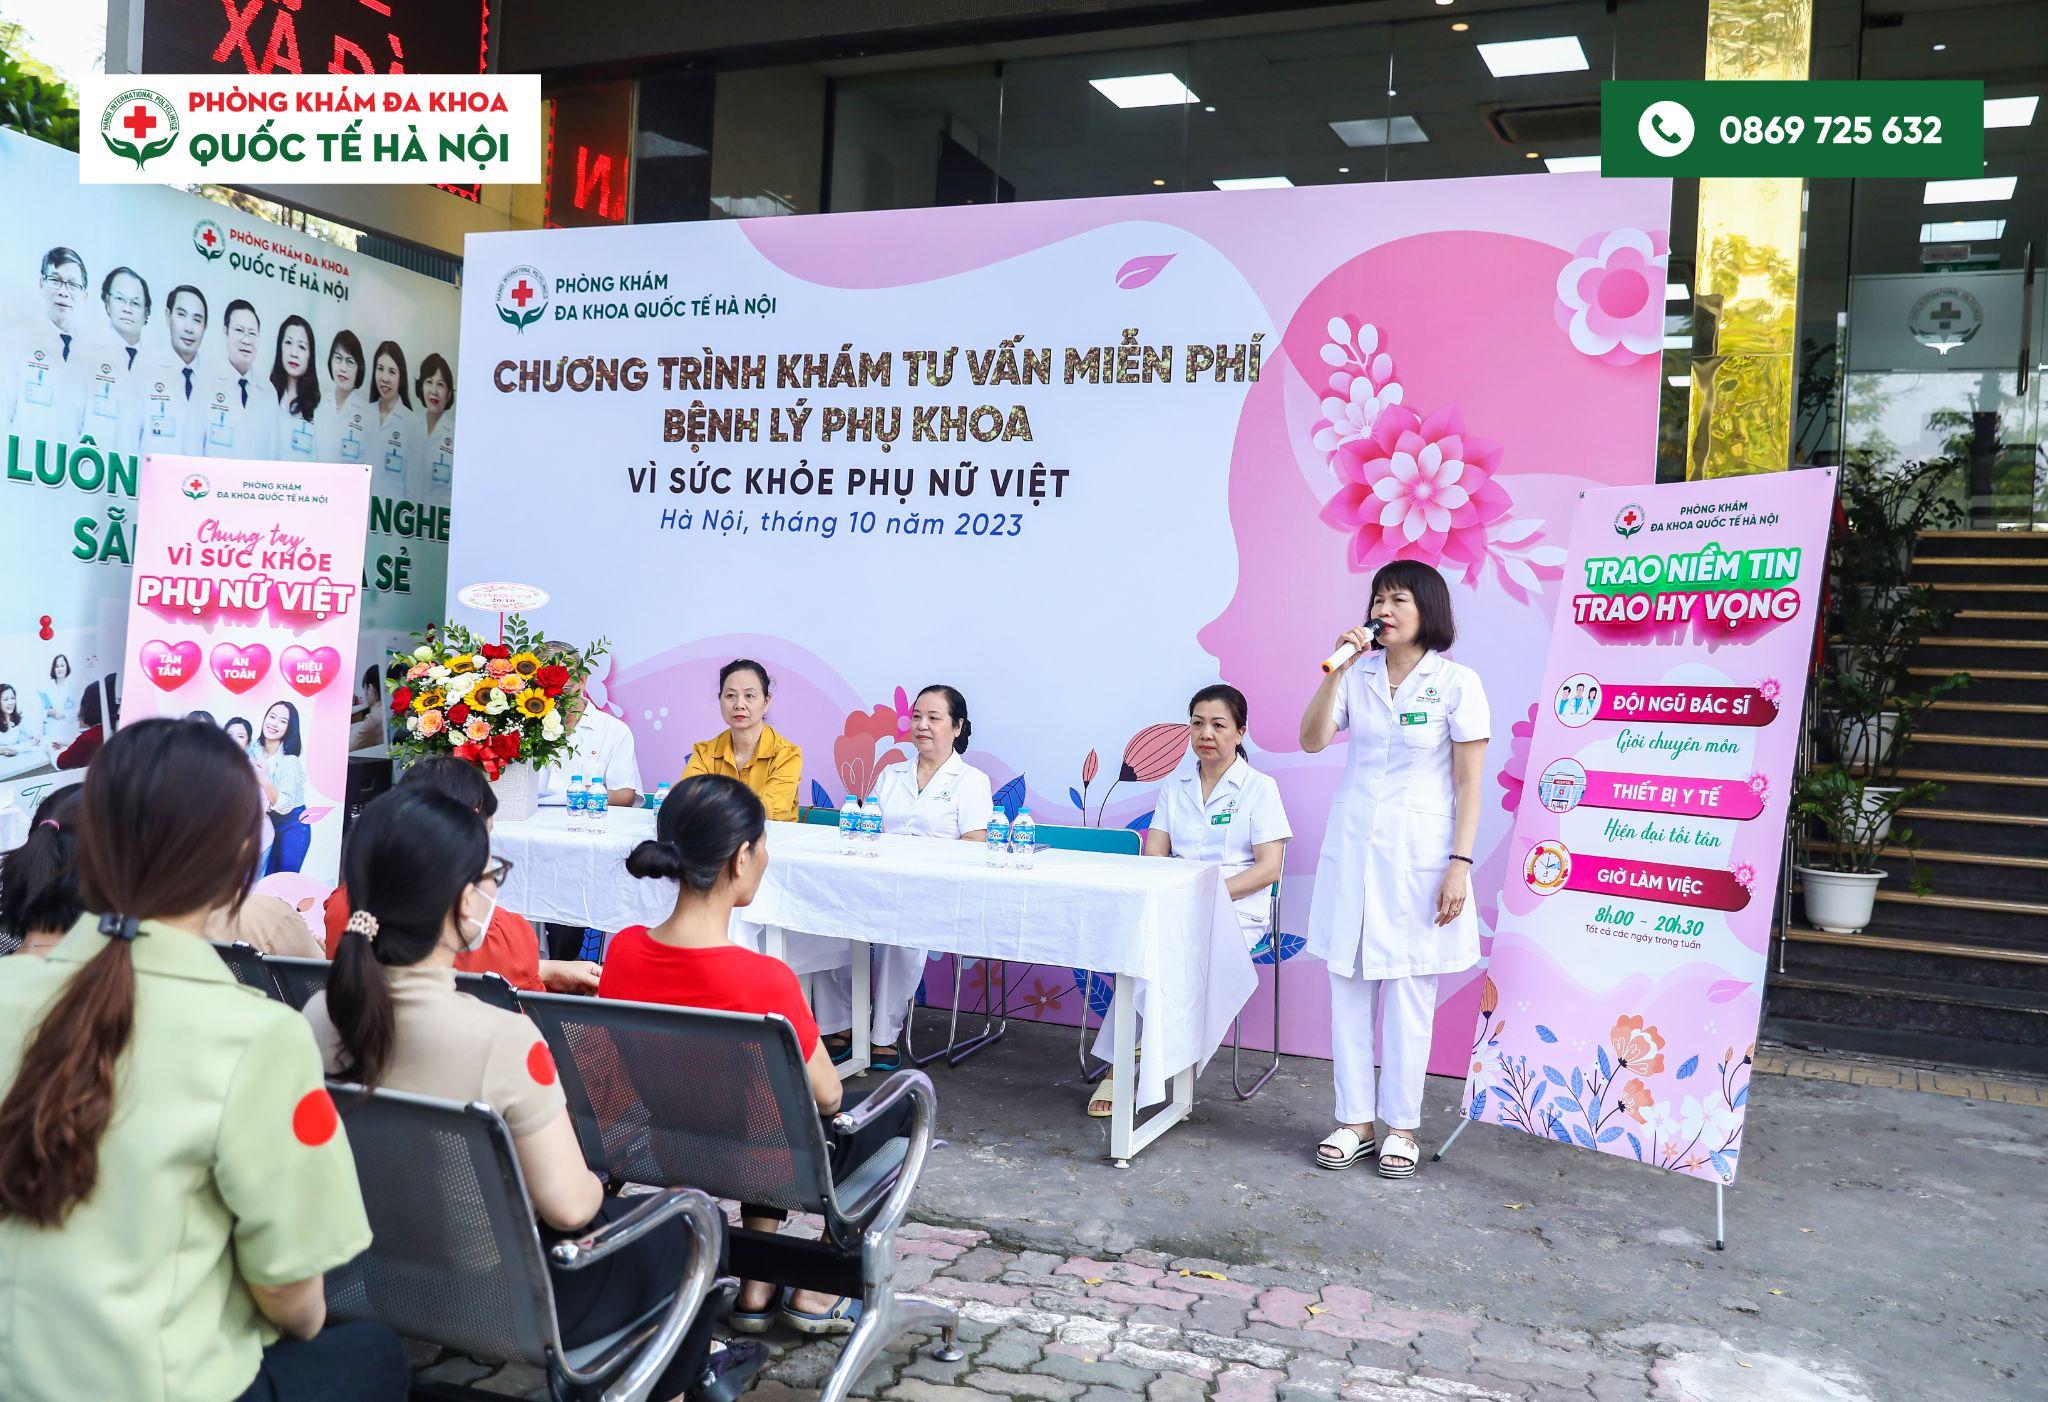 Khám phụ khoa miễn phí – hoạt động nhân văn thiết thực tại phường Kim Liên, Hà Nội - 1